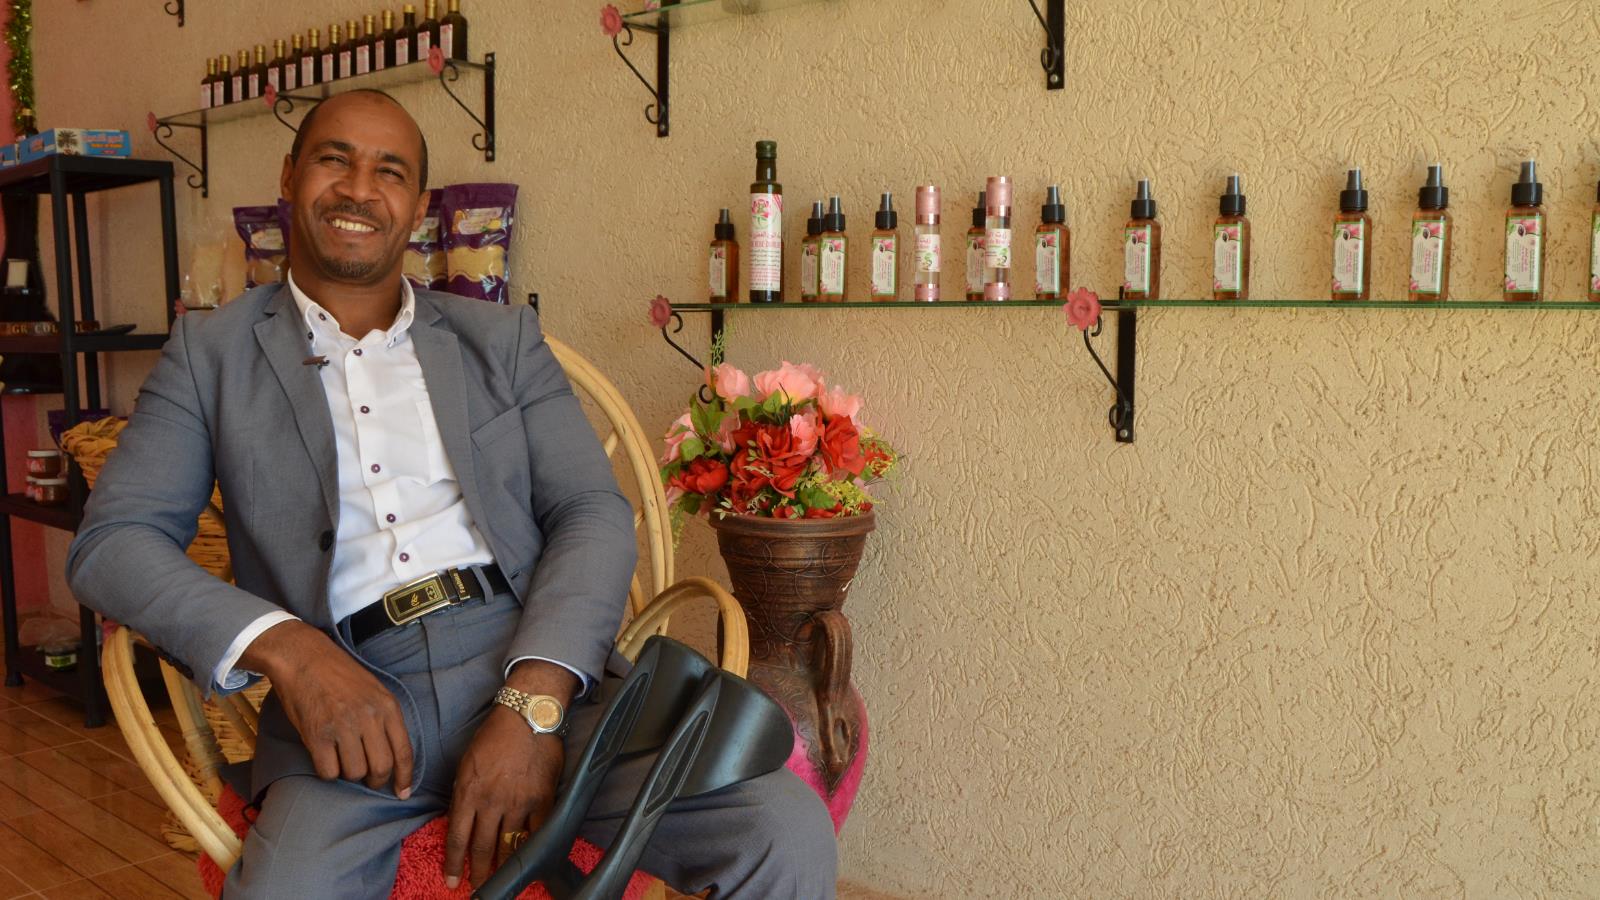 رشيد نايت الحسين من ذوي الاحتياجات الخاصة رئيس التعاونية الفلاحية أم عياش لإنتاج وتقطير الورد العطري (الجزيرة)